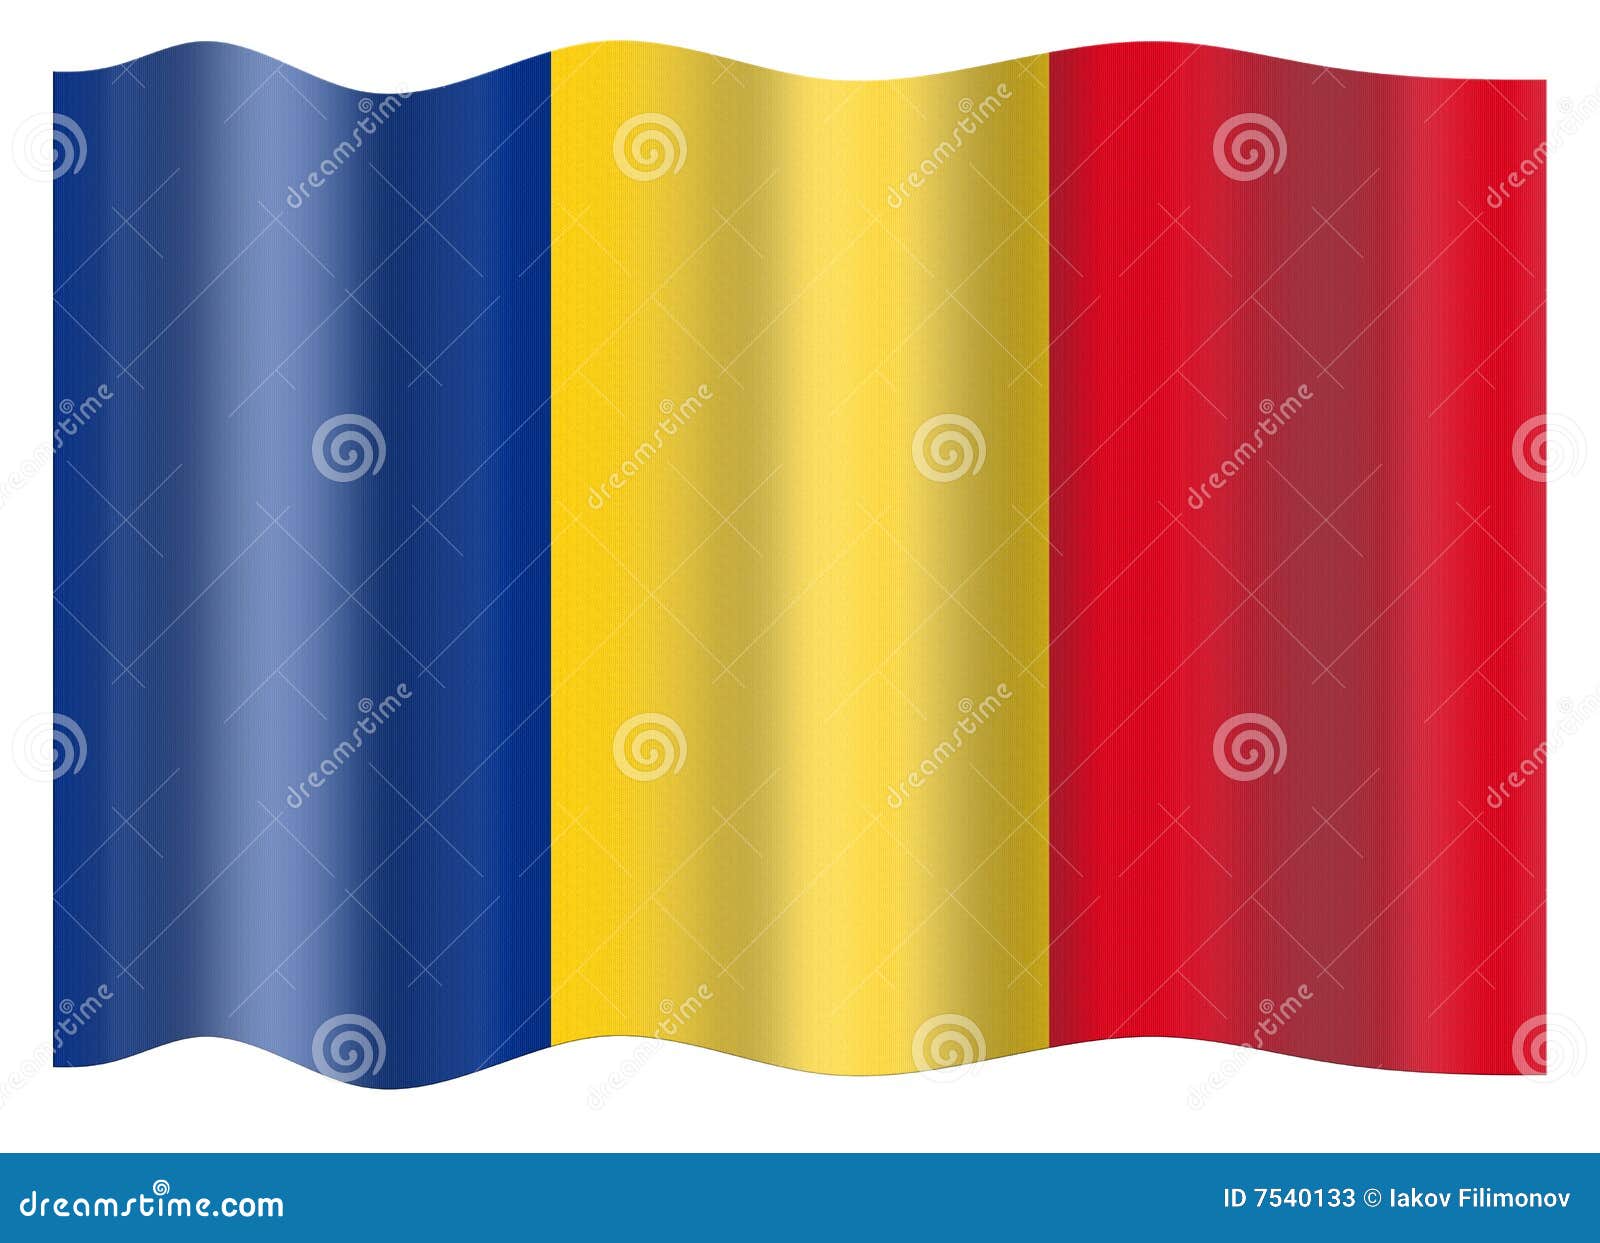 rumania flag